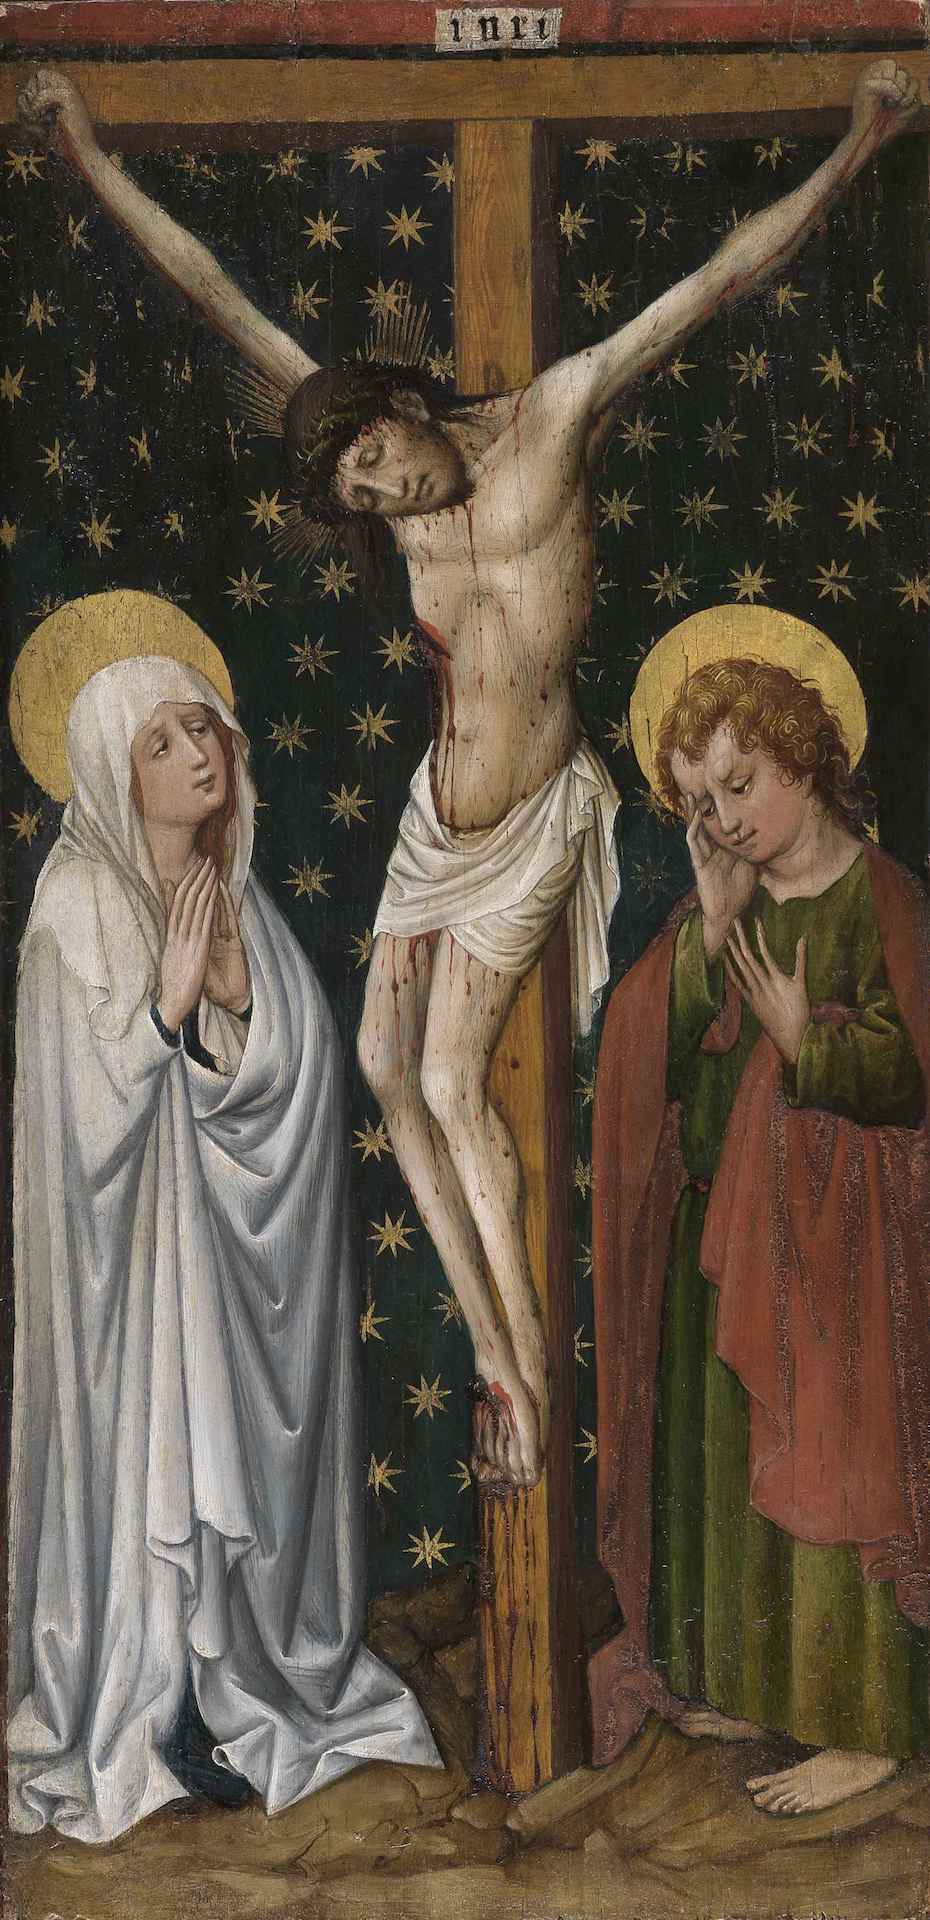 Gemälde des Meisters des Staufener Altars, das die Kreuzigungsszene zeigt